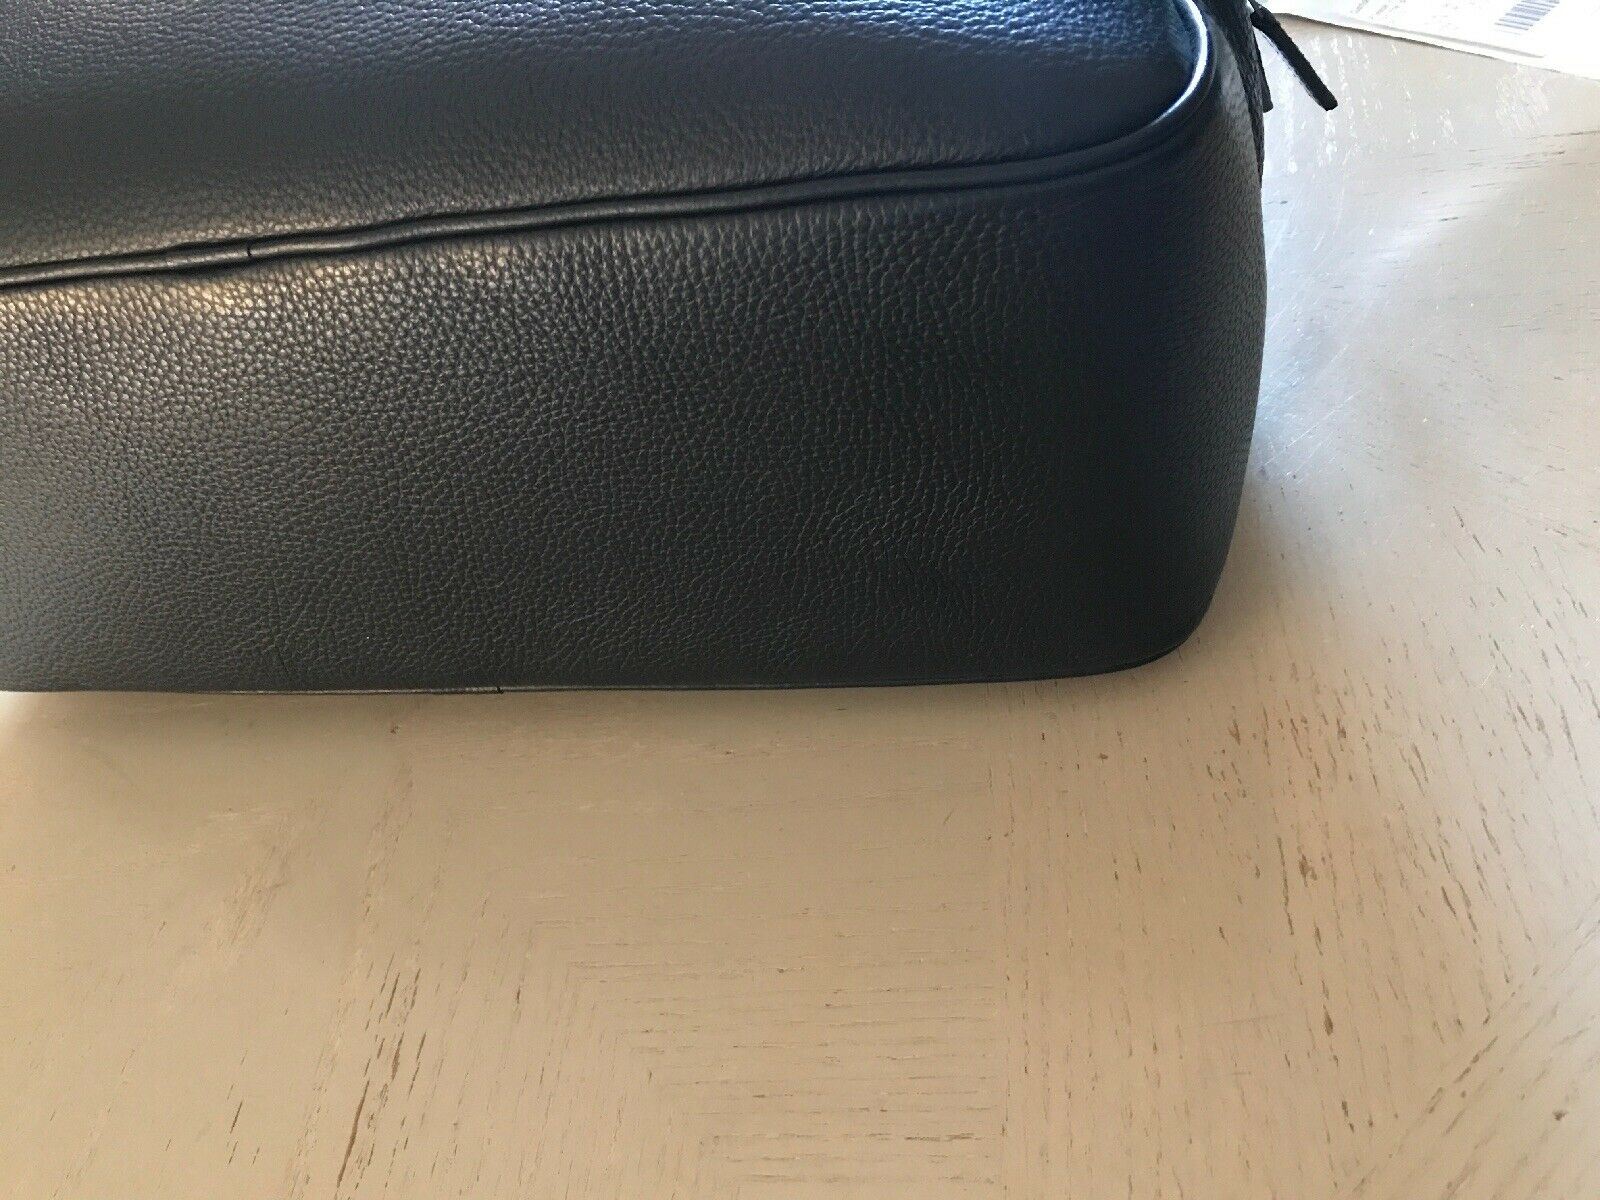 New $1395 Armani Collezioni Mens Leather Briefcase Travel Bag Black